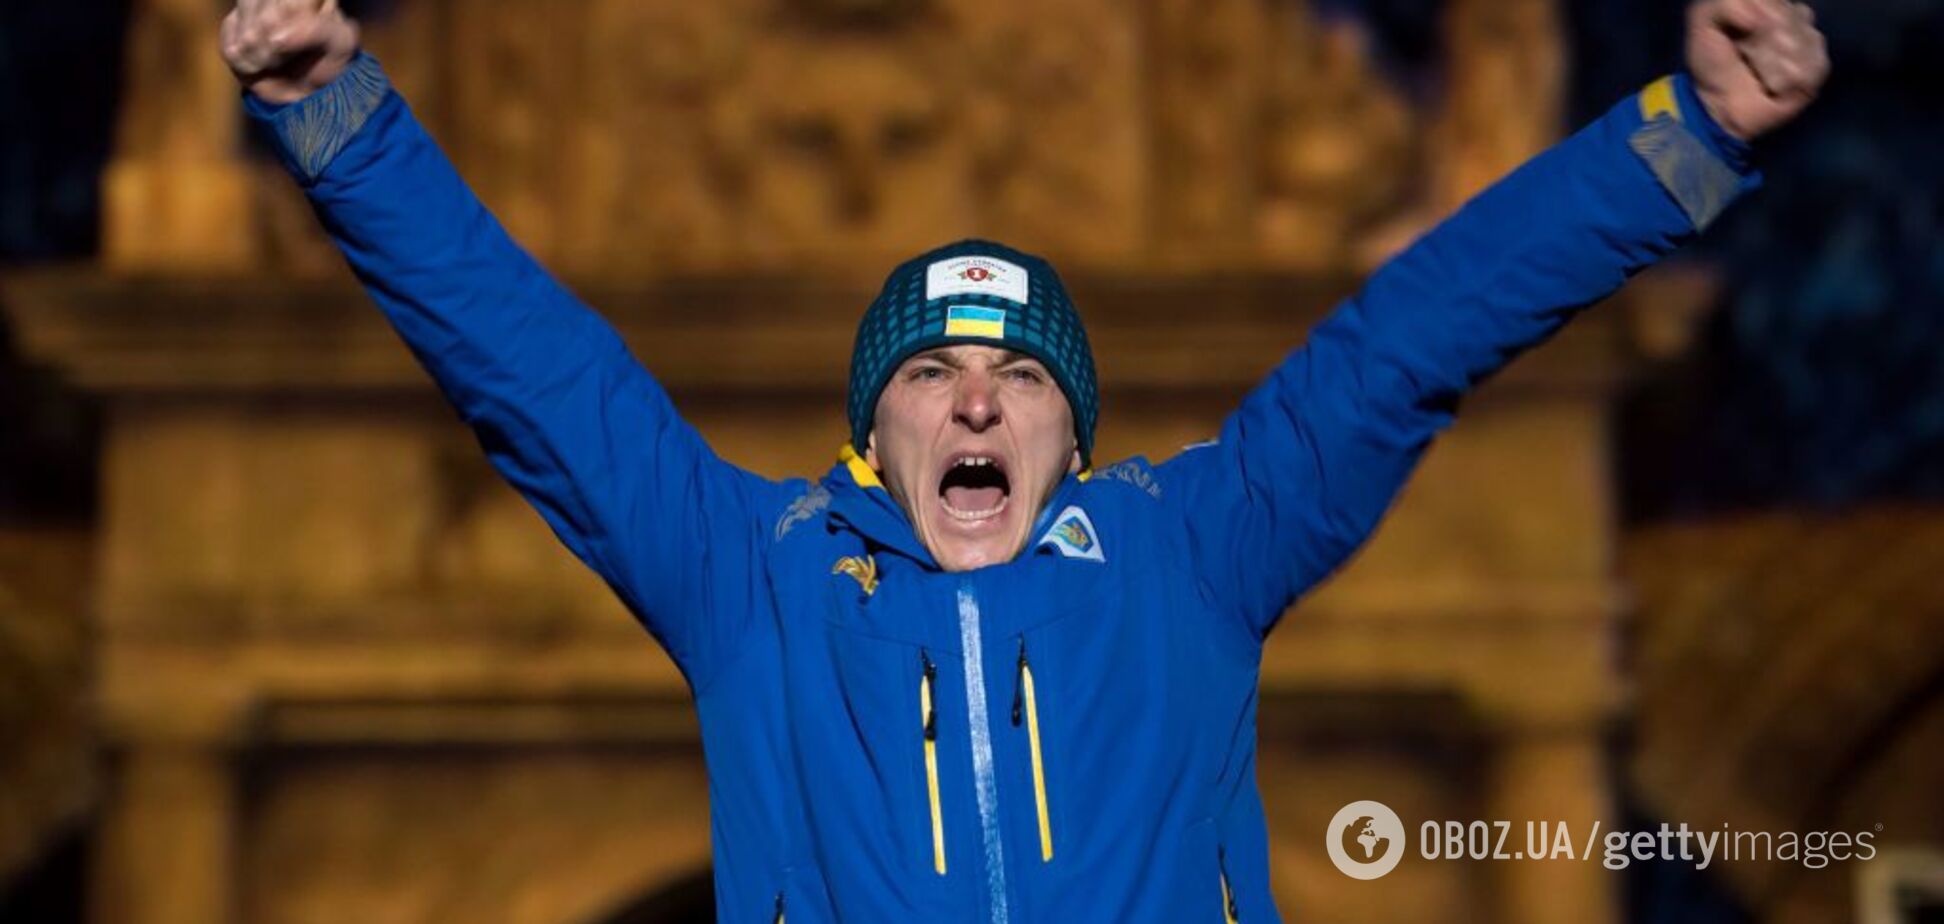 'Просто монстр': у Росії захопилися перемогою українця на ЧС із біатлону